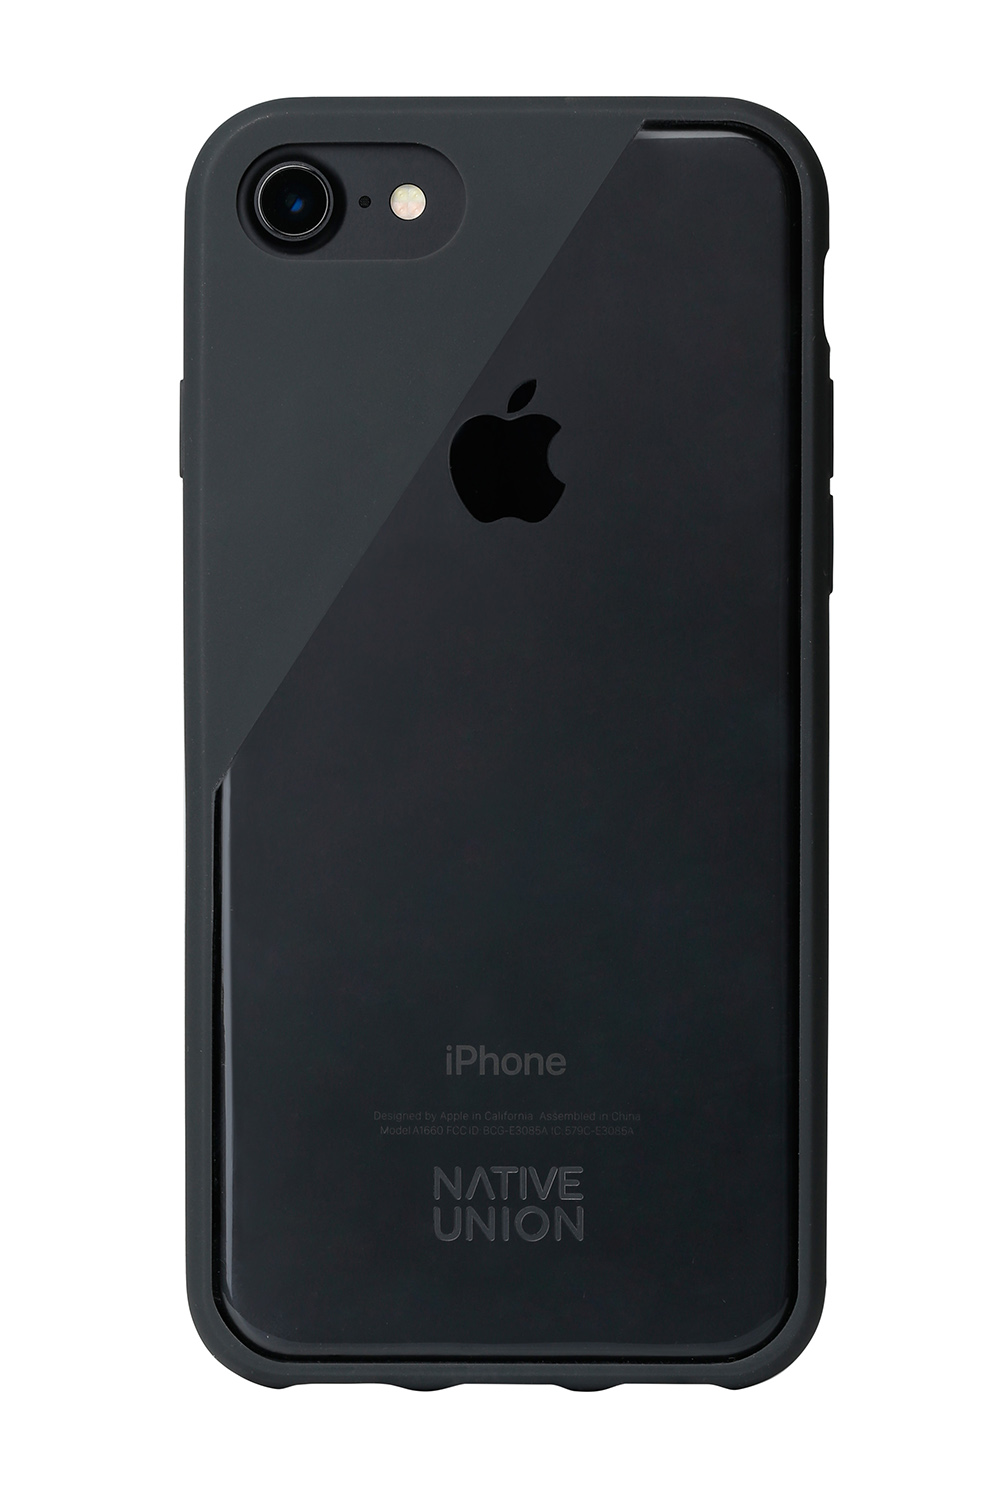 【Native Union】CLIC Crystal 水晶空壓手機殼-黑(iPhone 7)